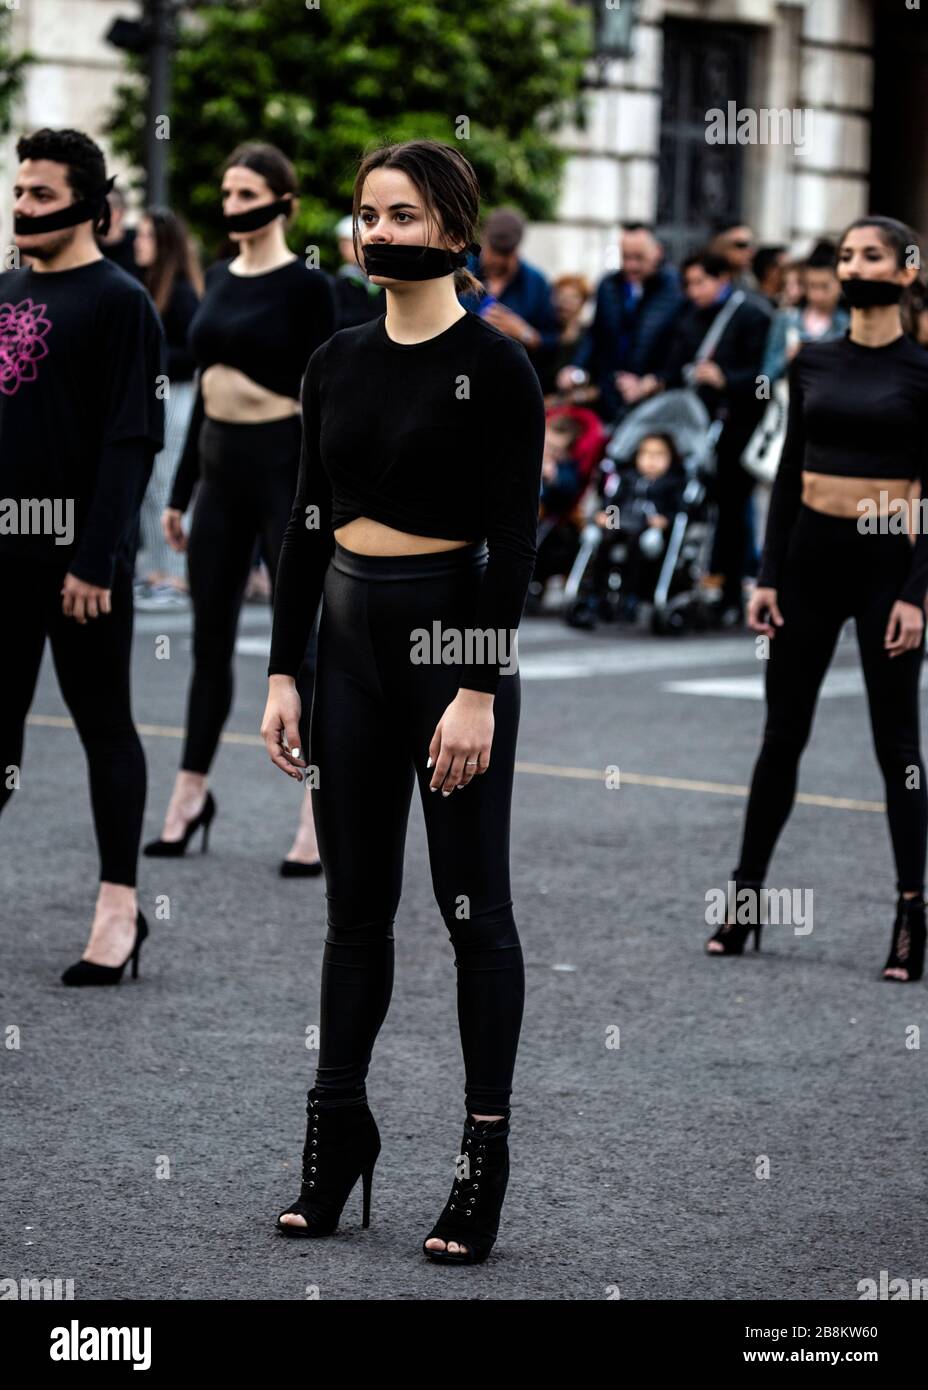 Tanz-Truppe in schwarz gekleidet mit Gesichtsmasken über dem Mund, internationaler Frauentag 2020, Valencia, Spanien. Stockfoto